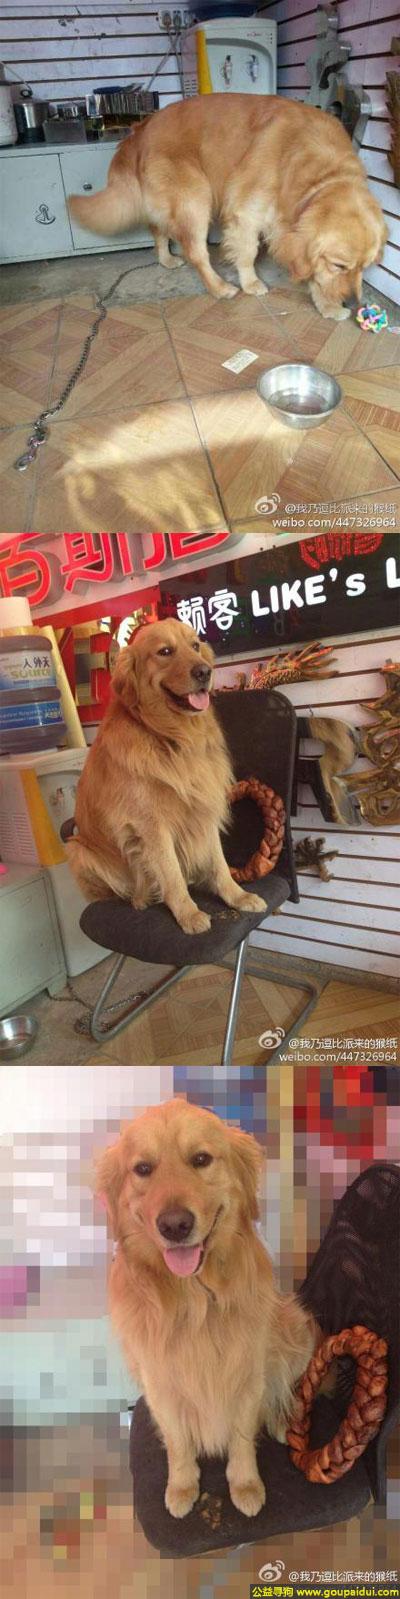 【昆明找狗】，南省昆明市五华区寻狗正义坊购物中心附近丢失名叫哈里金毛狗，它是一只非常可爱的宠物狗狗，希望它早日回家，不要变成流浪狗。